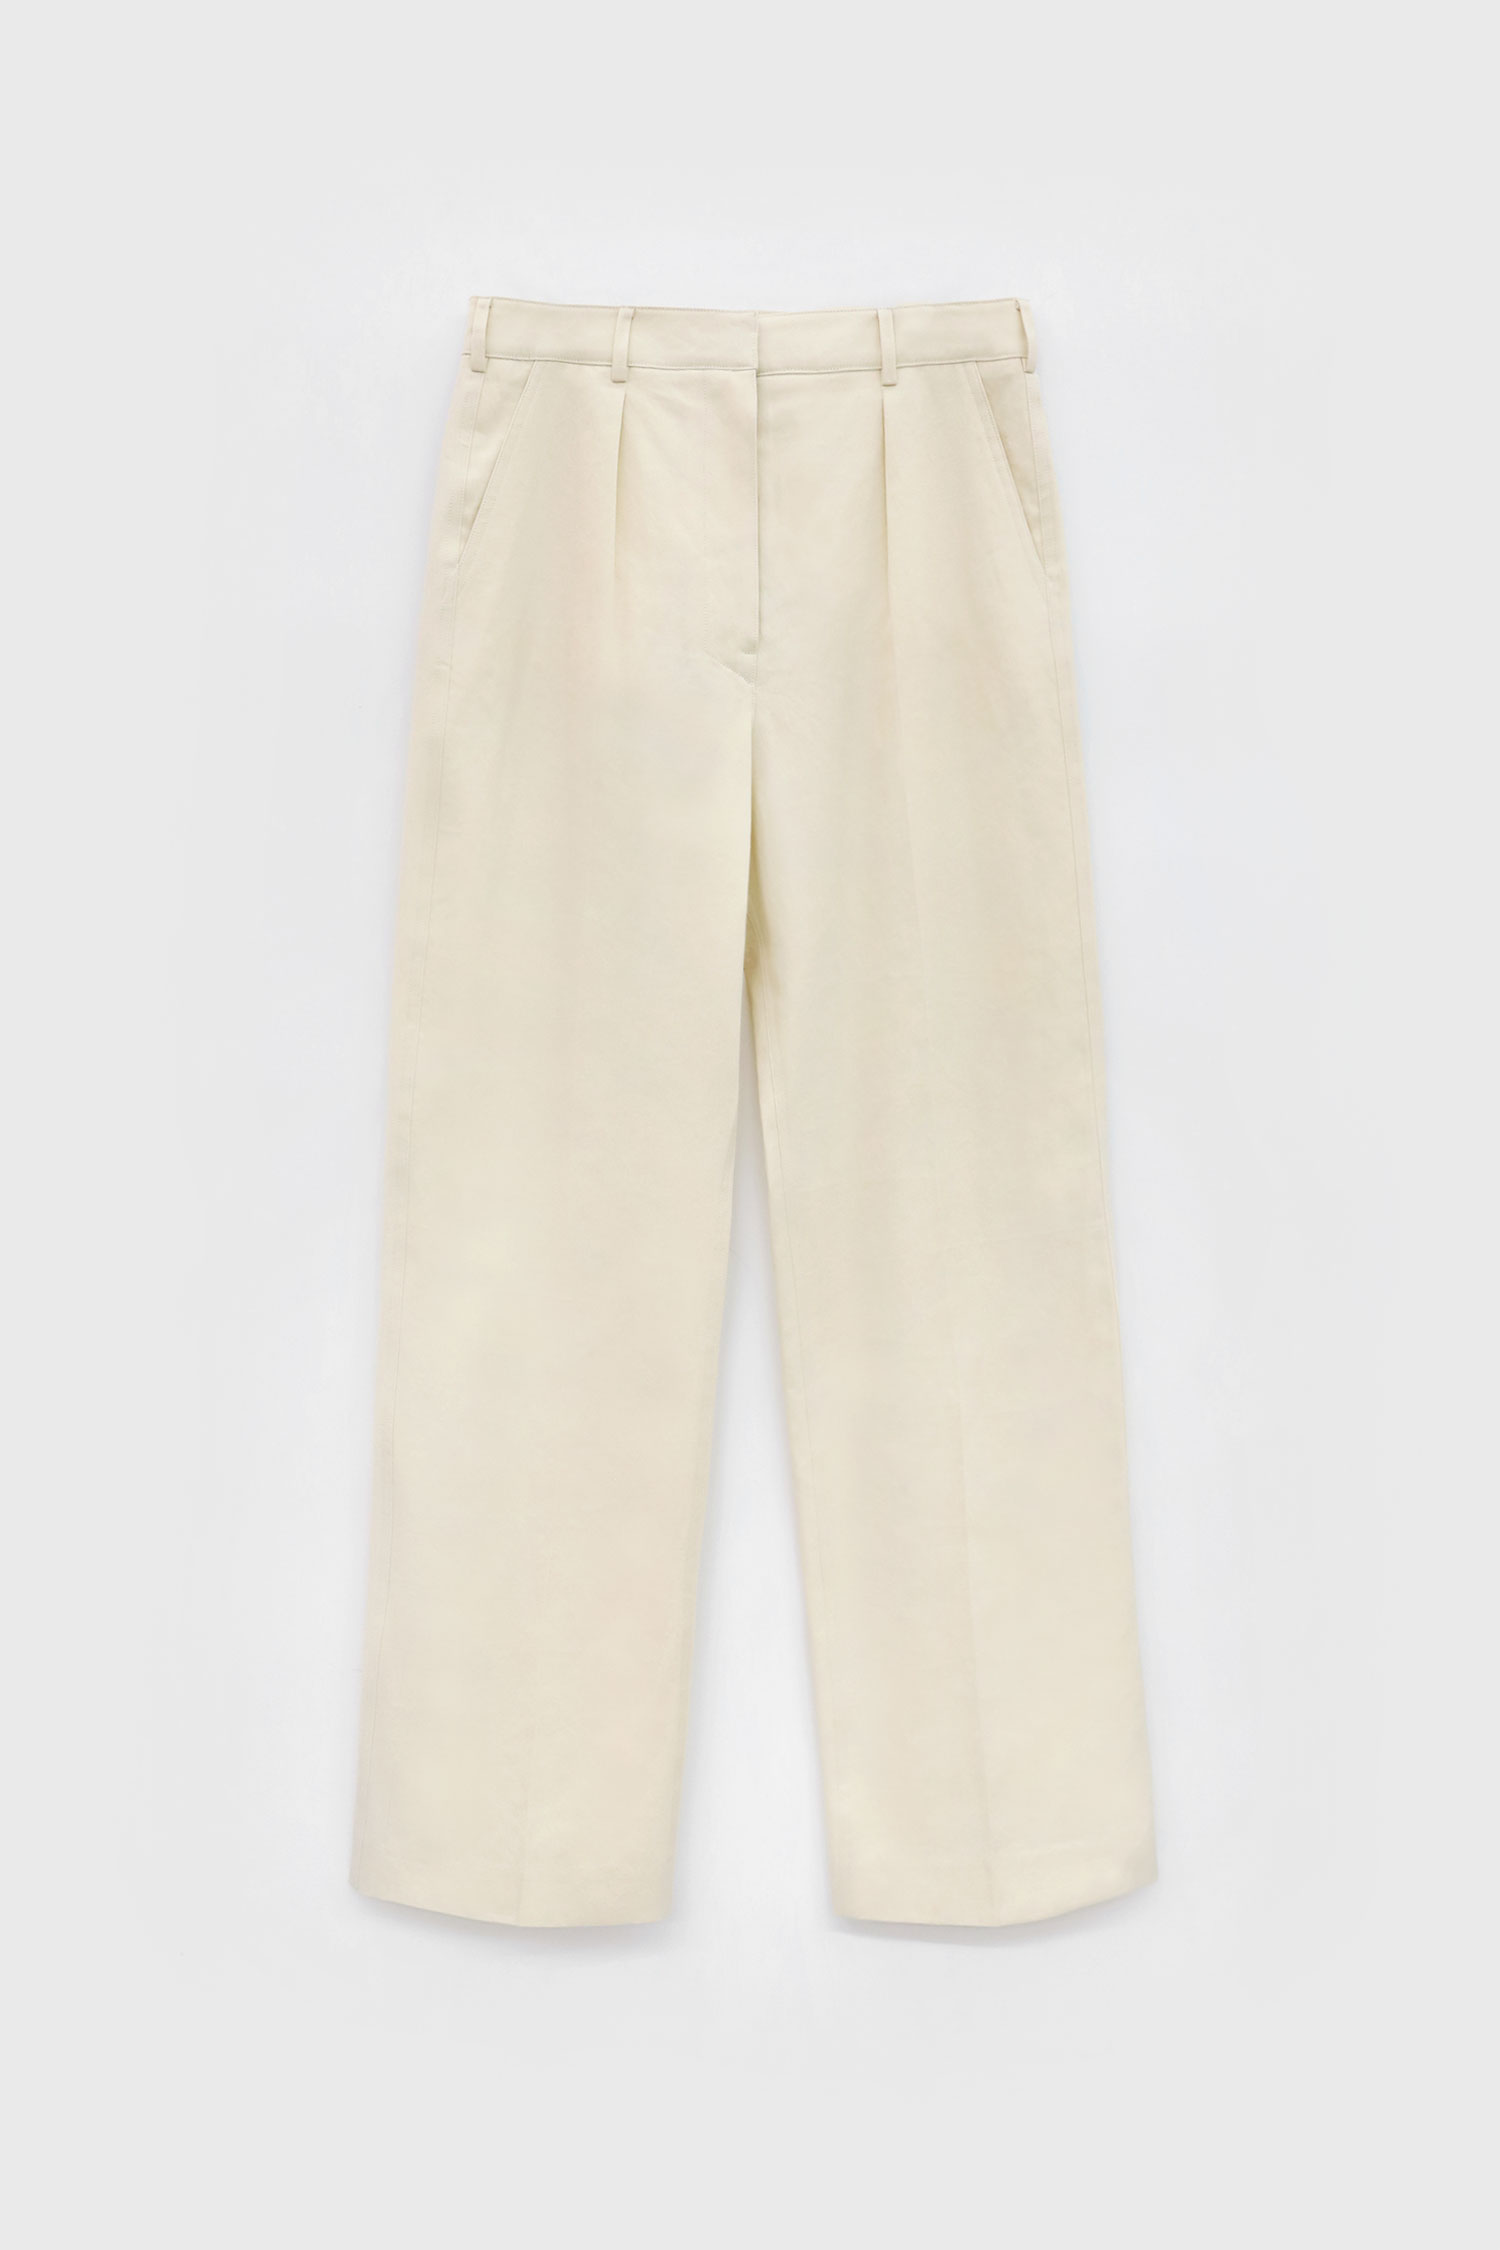 Simple Line Cotton Pants